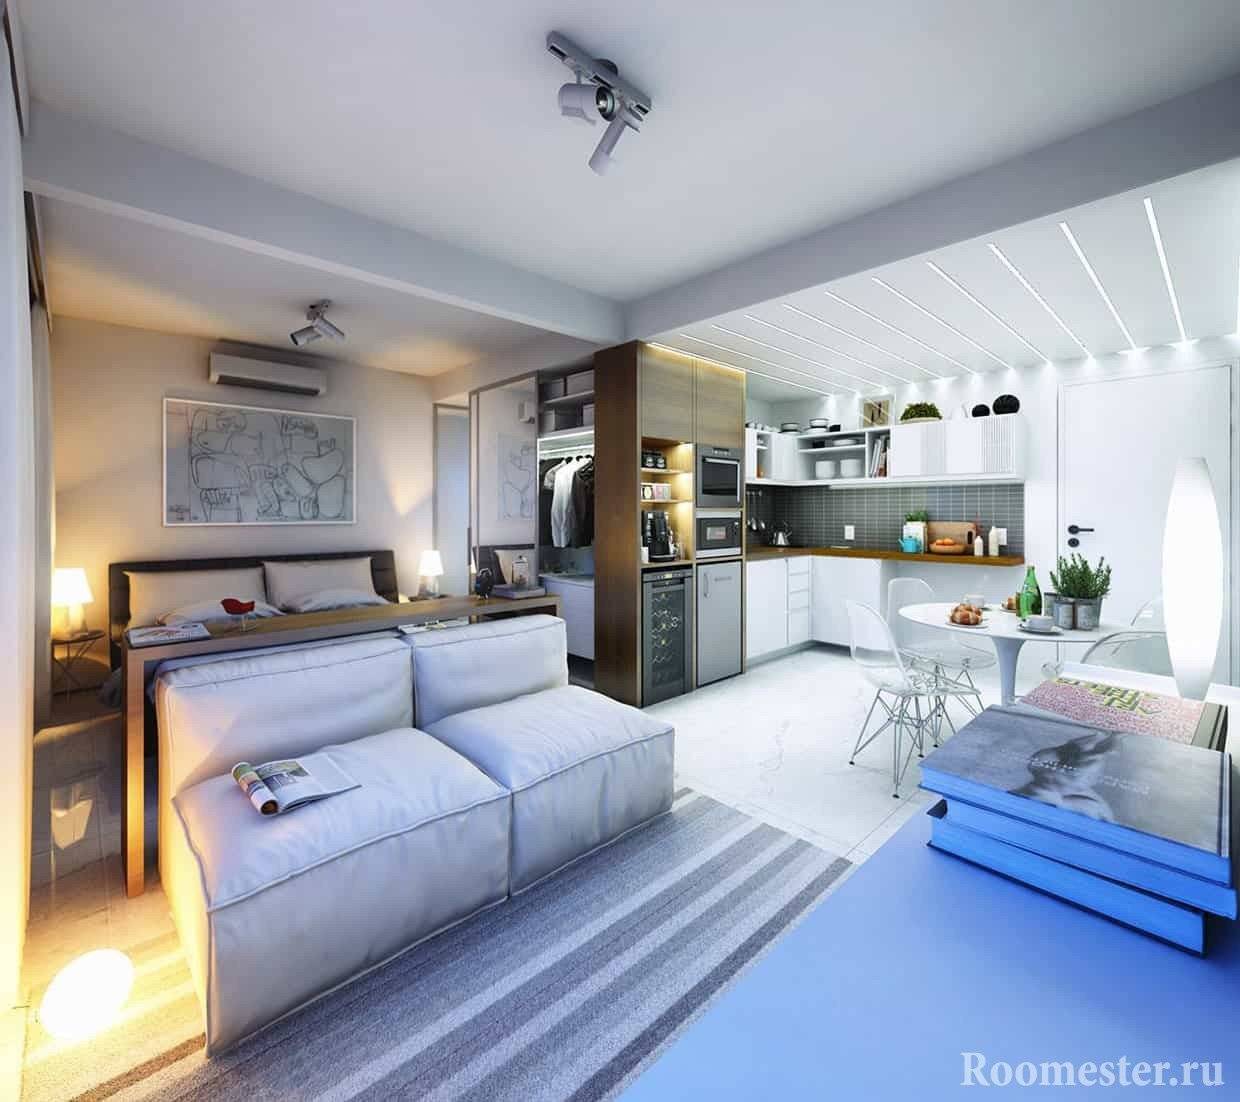 Скандинавский стиль в интерьере квартиры — фото 15-ти реальных проектов